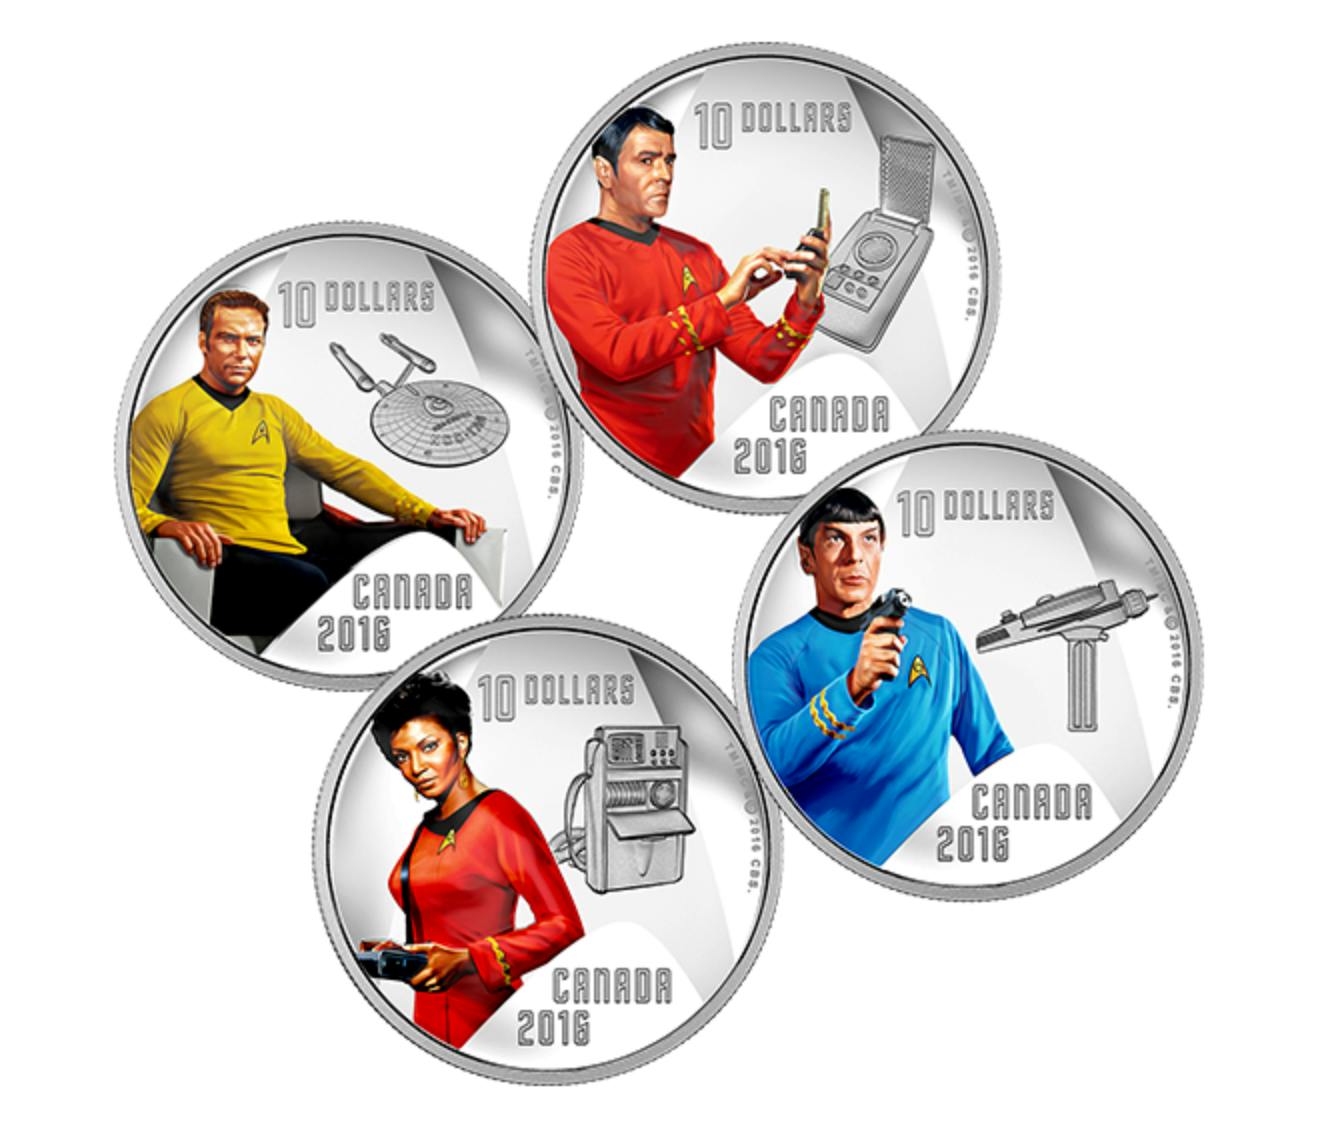 Star Trek: The Original Series